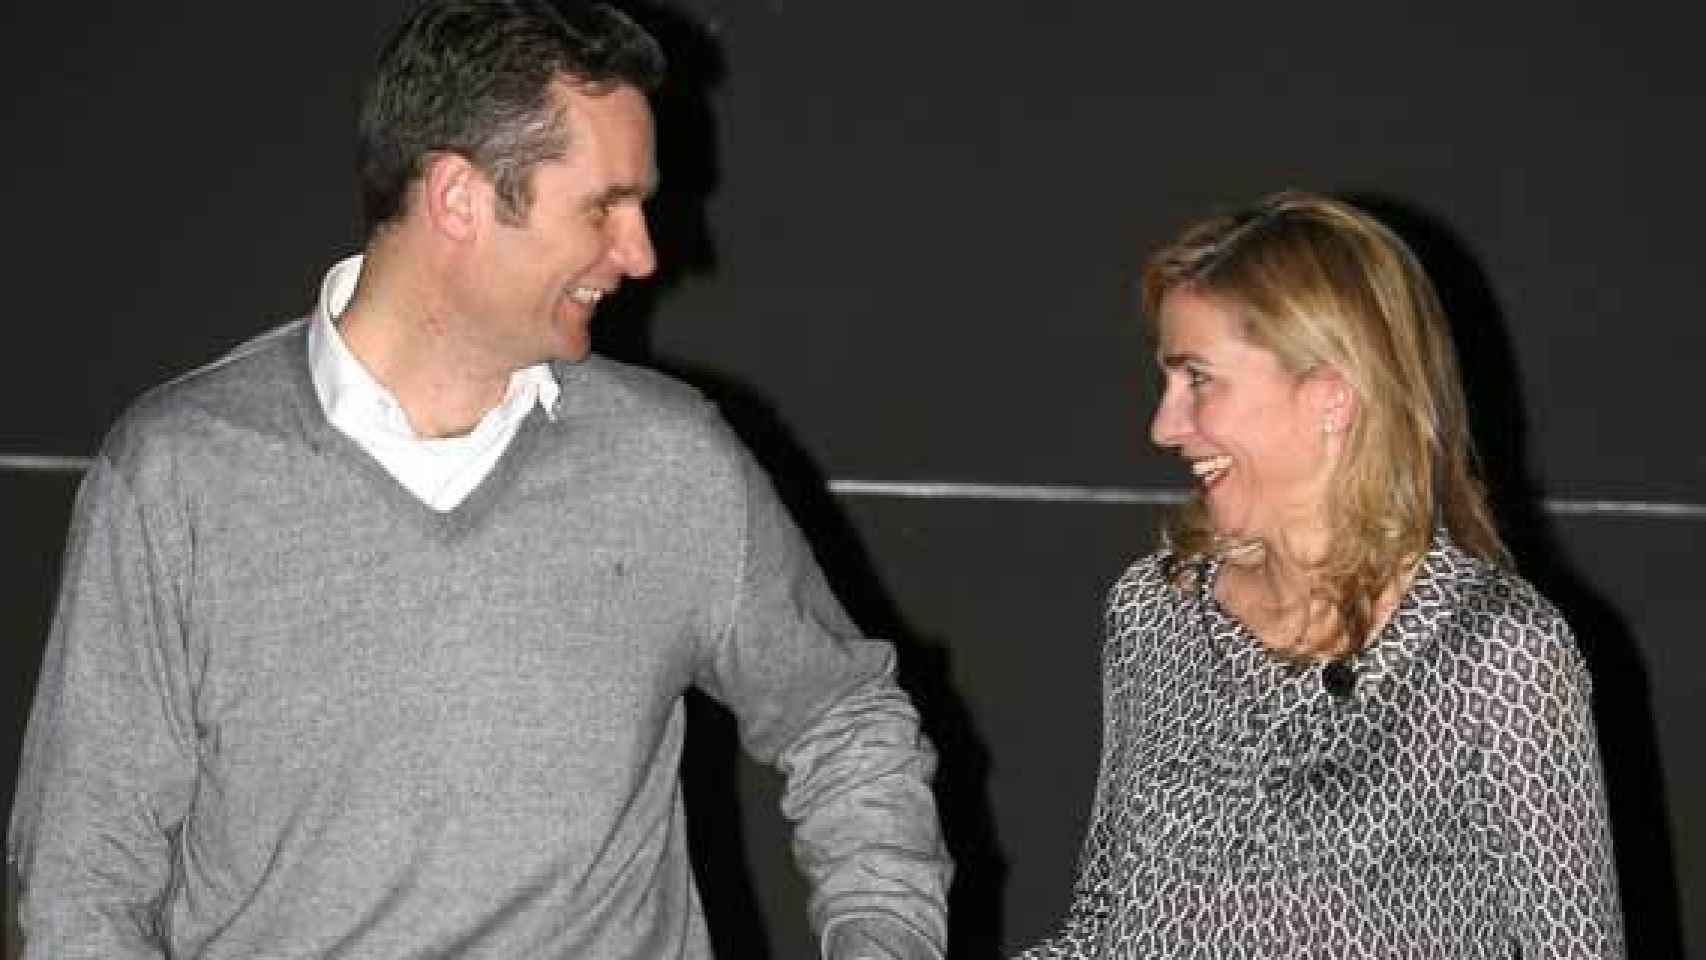 El matrimonio, sonriente, a las puertas de su casa de Barcelona en el 40 cumpleaños de Urdangarin